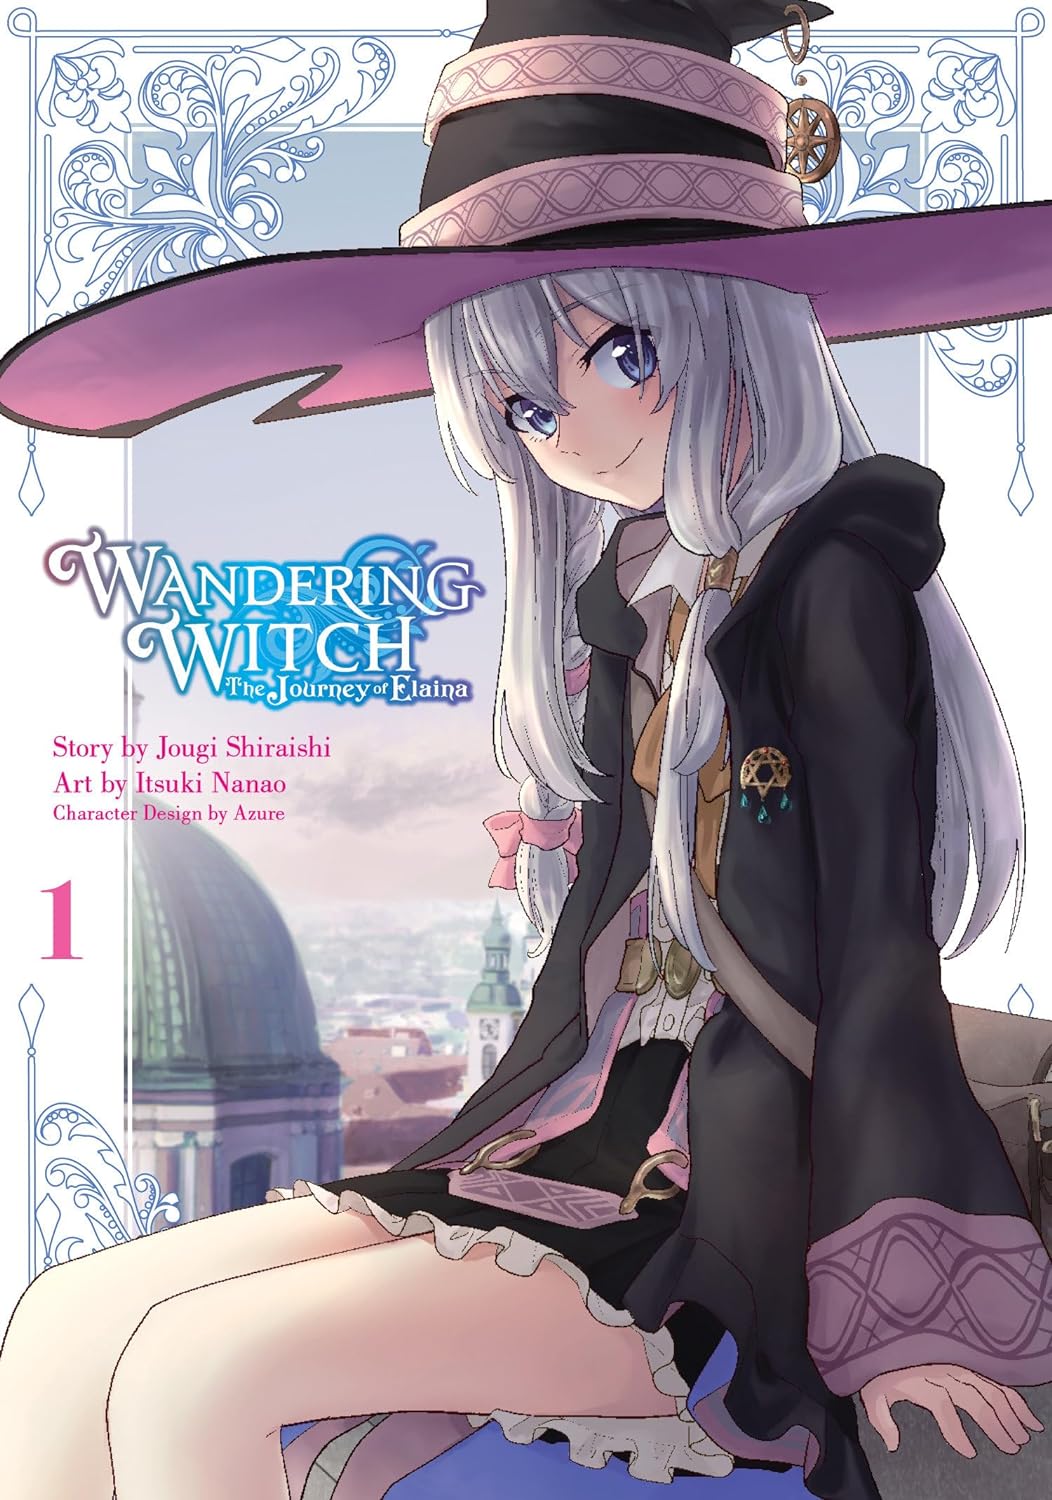 Wandering Witch (Manga): The Journey of Elaina